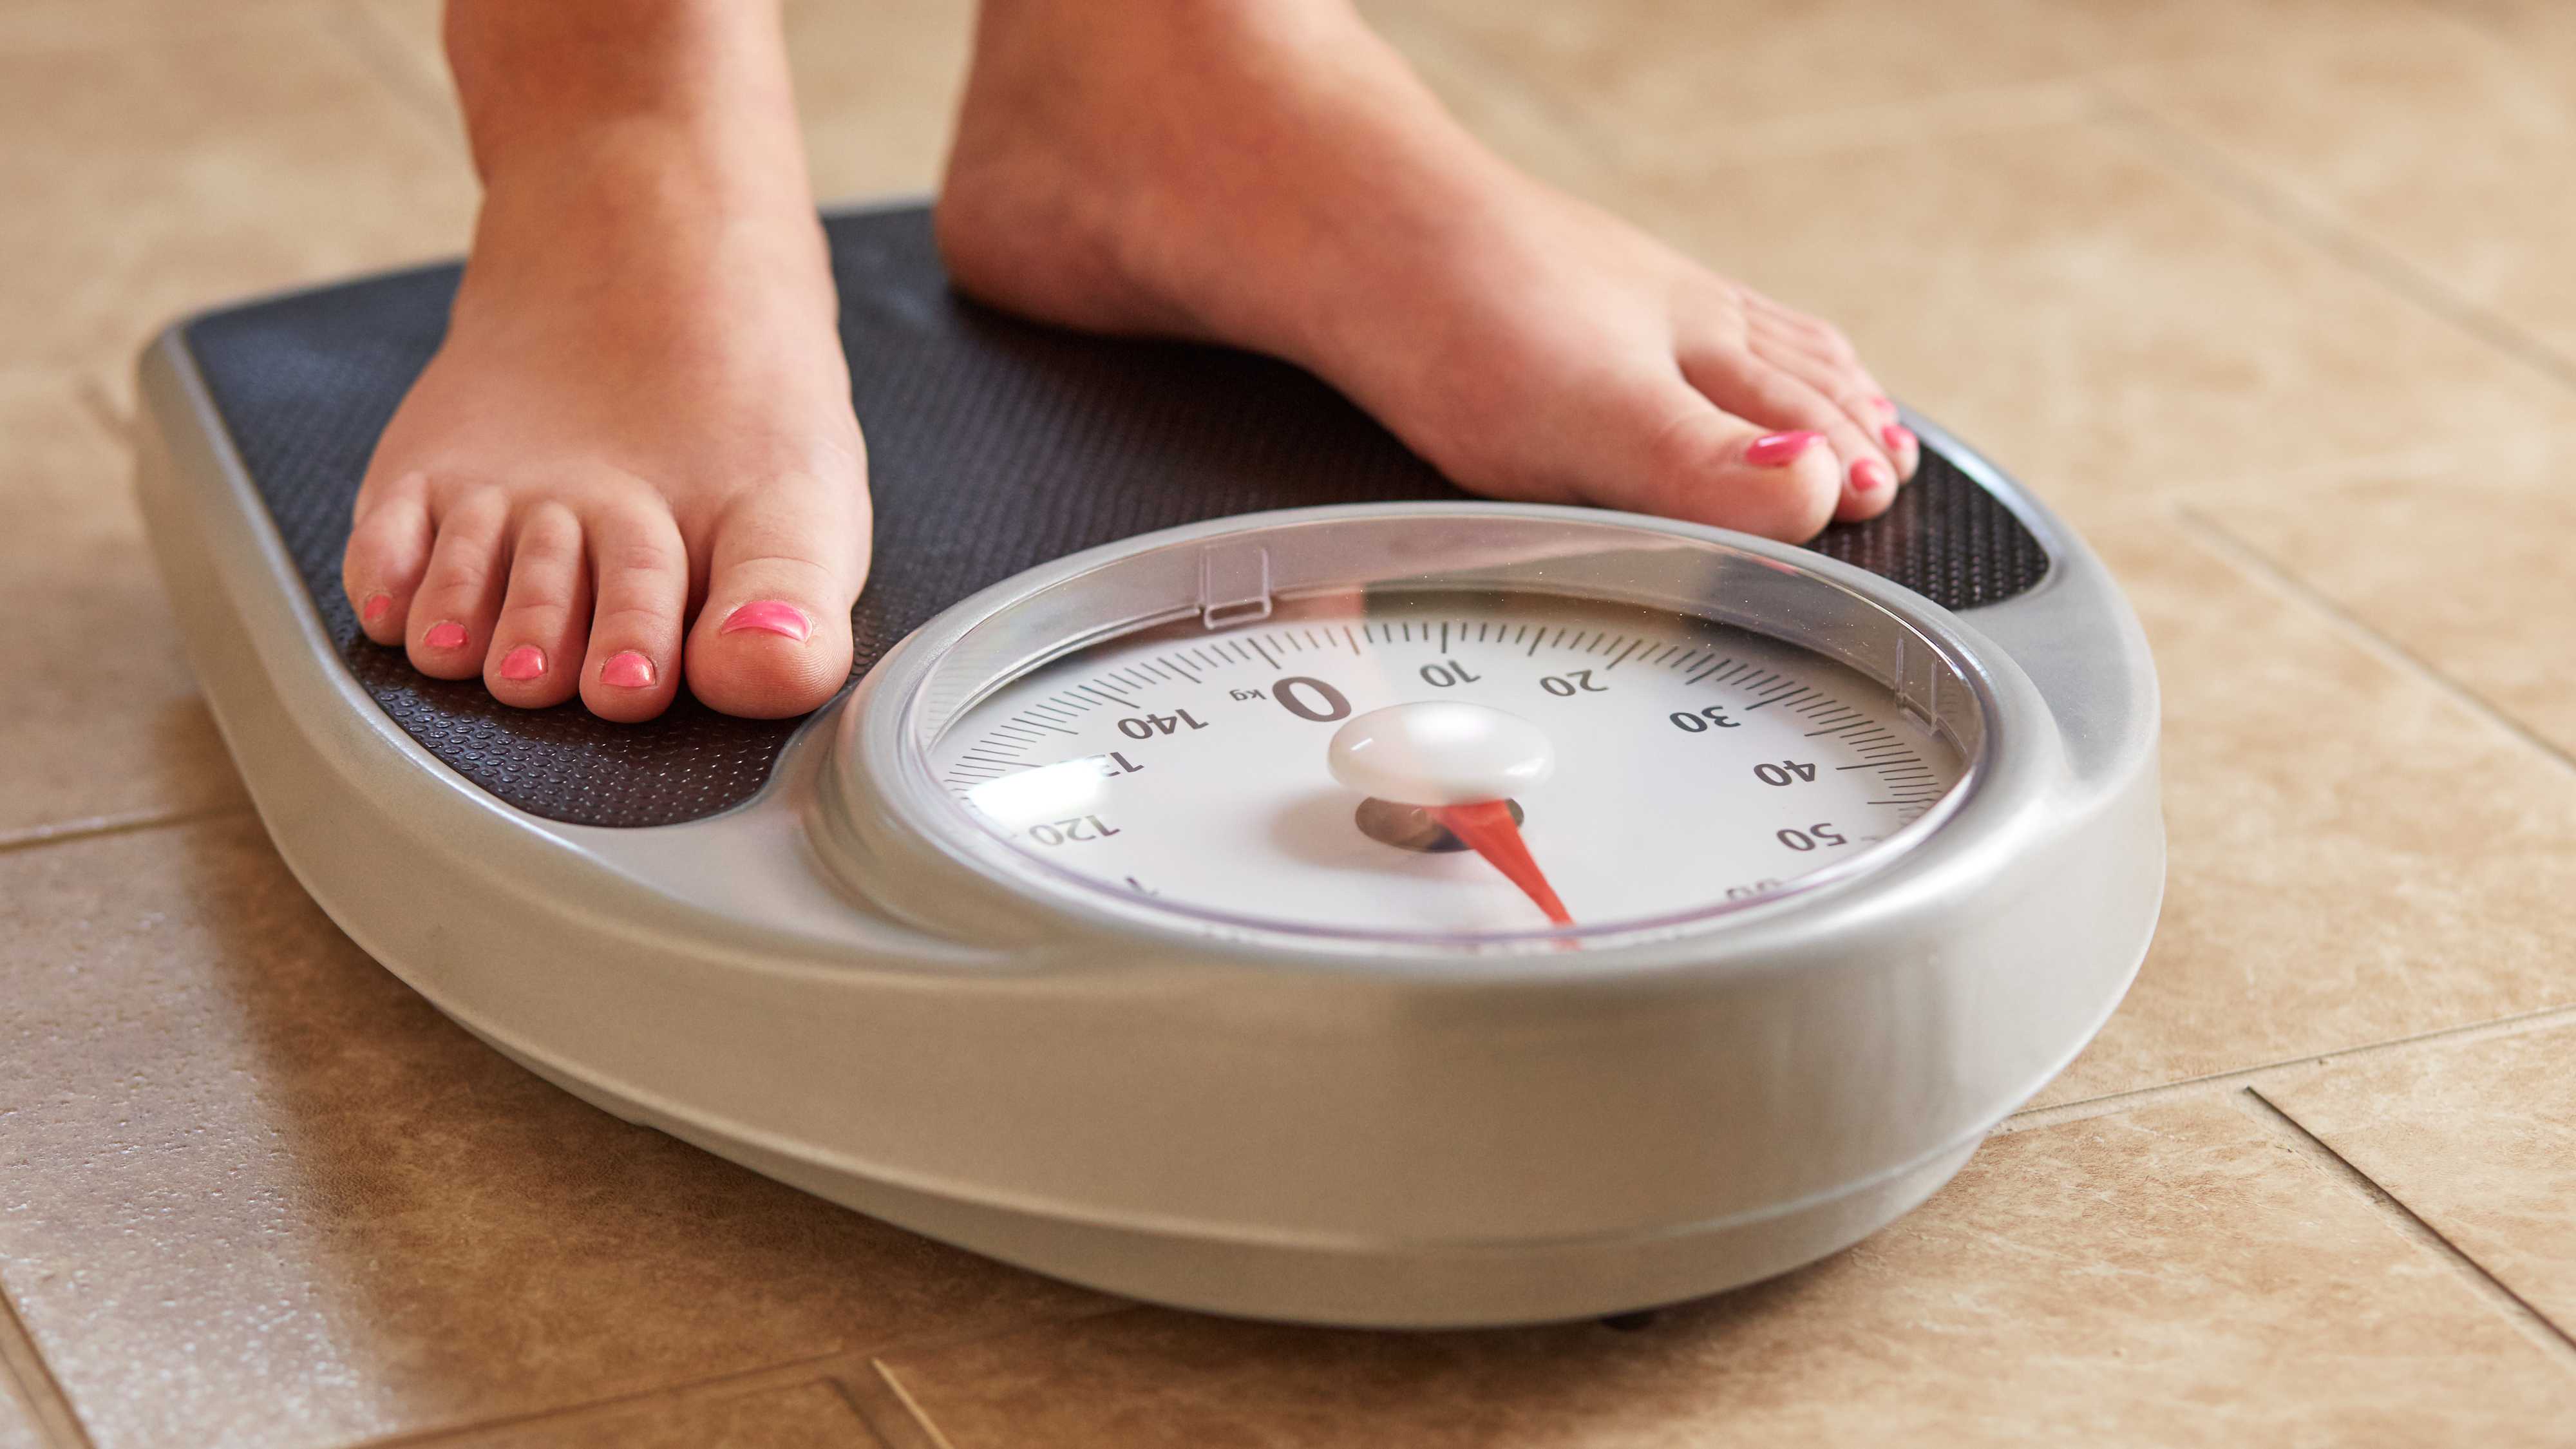 Беспричинная значимая потеря веса предрекла онкологический диагноз в течение года